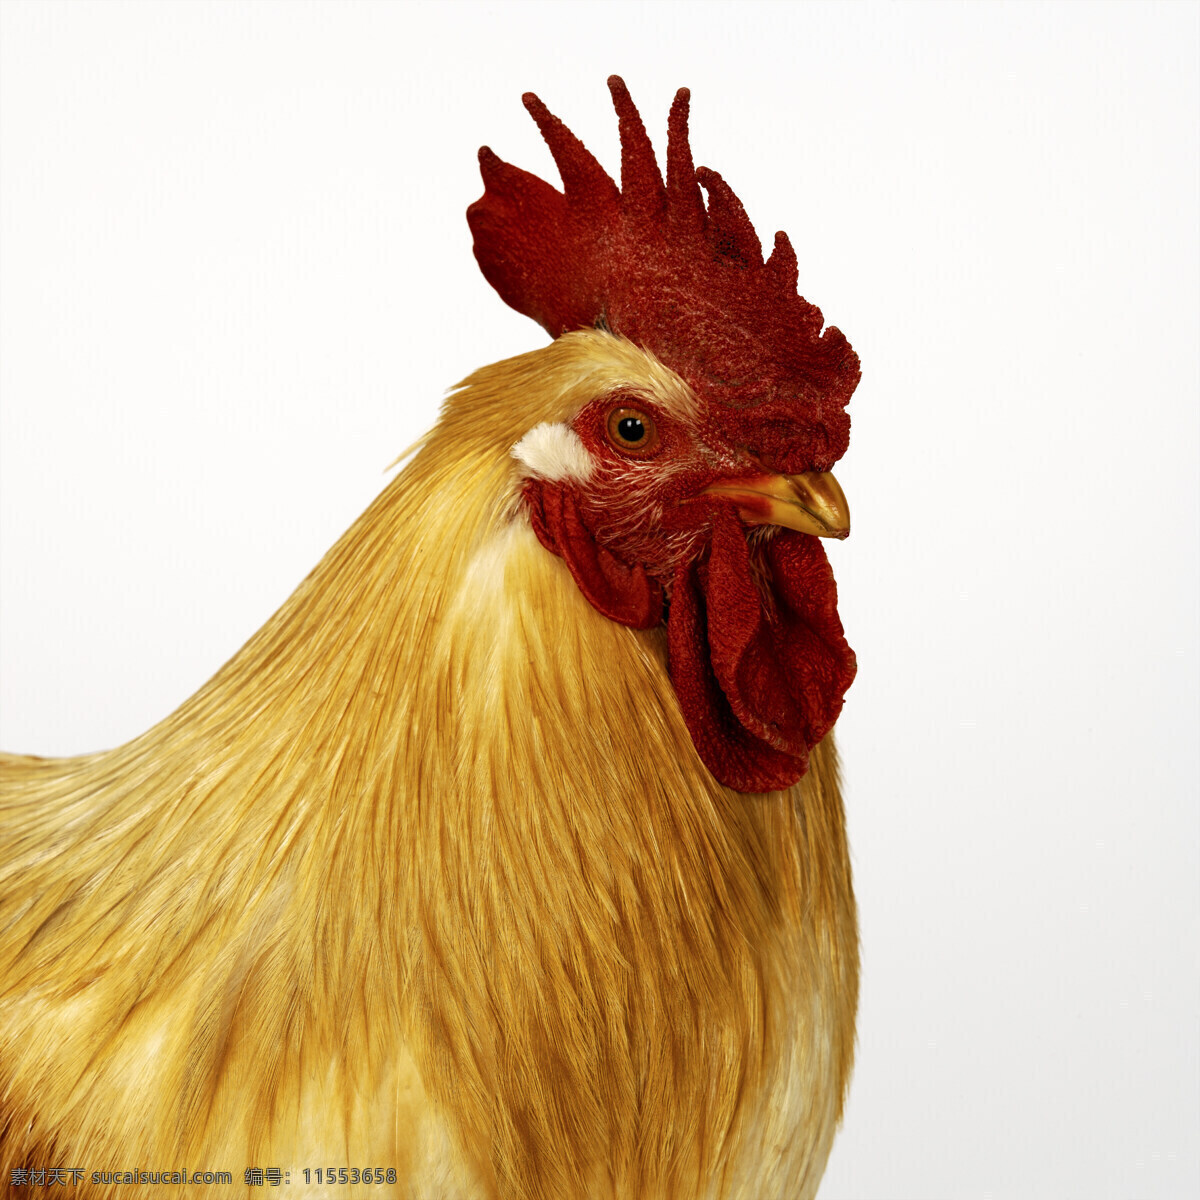 公鸡 头部 动物 鸟禽 家禽 养殖 头部特写 摄影图 空中飞鸟 生物世界